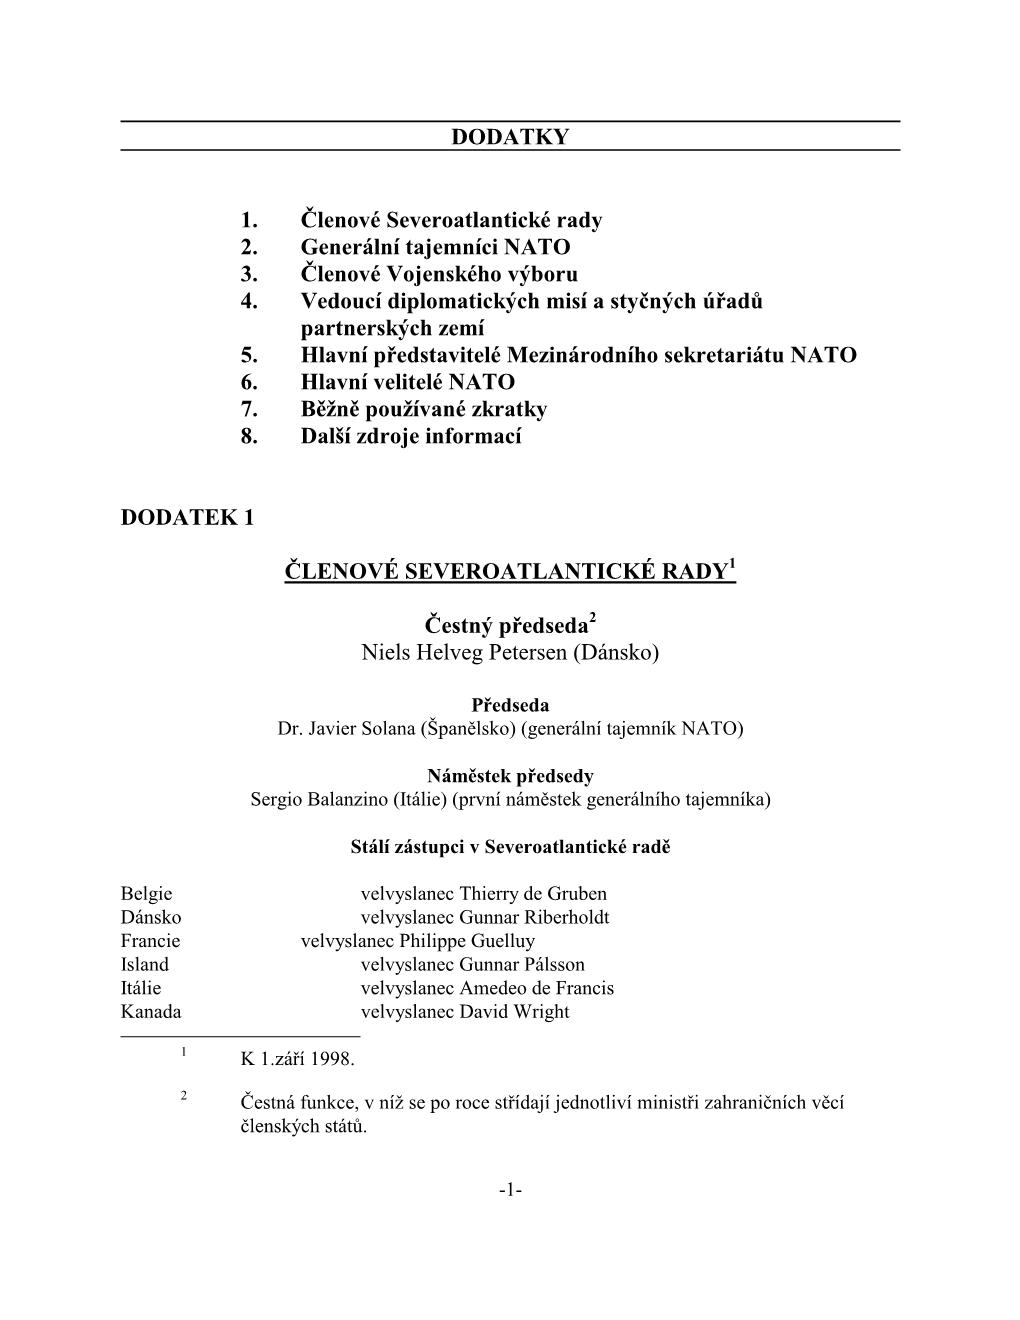 NATO Handbook Dodatky